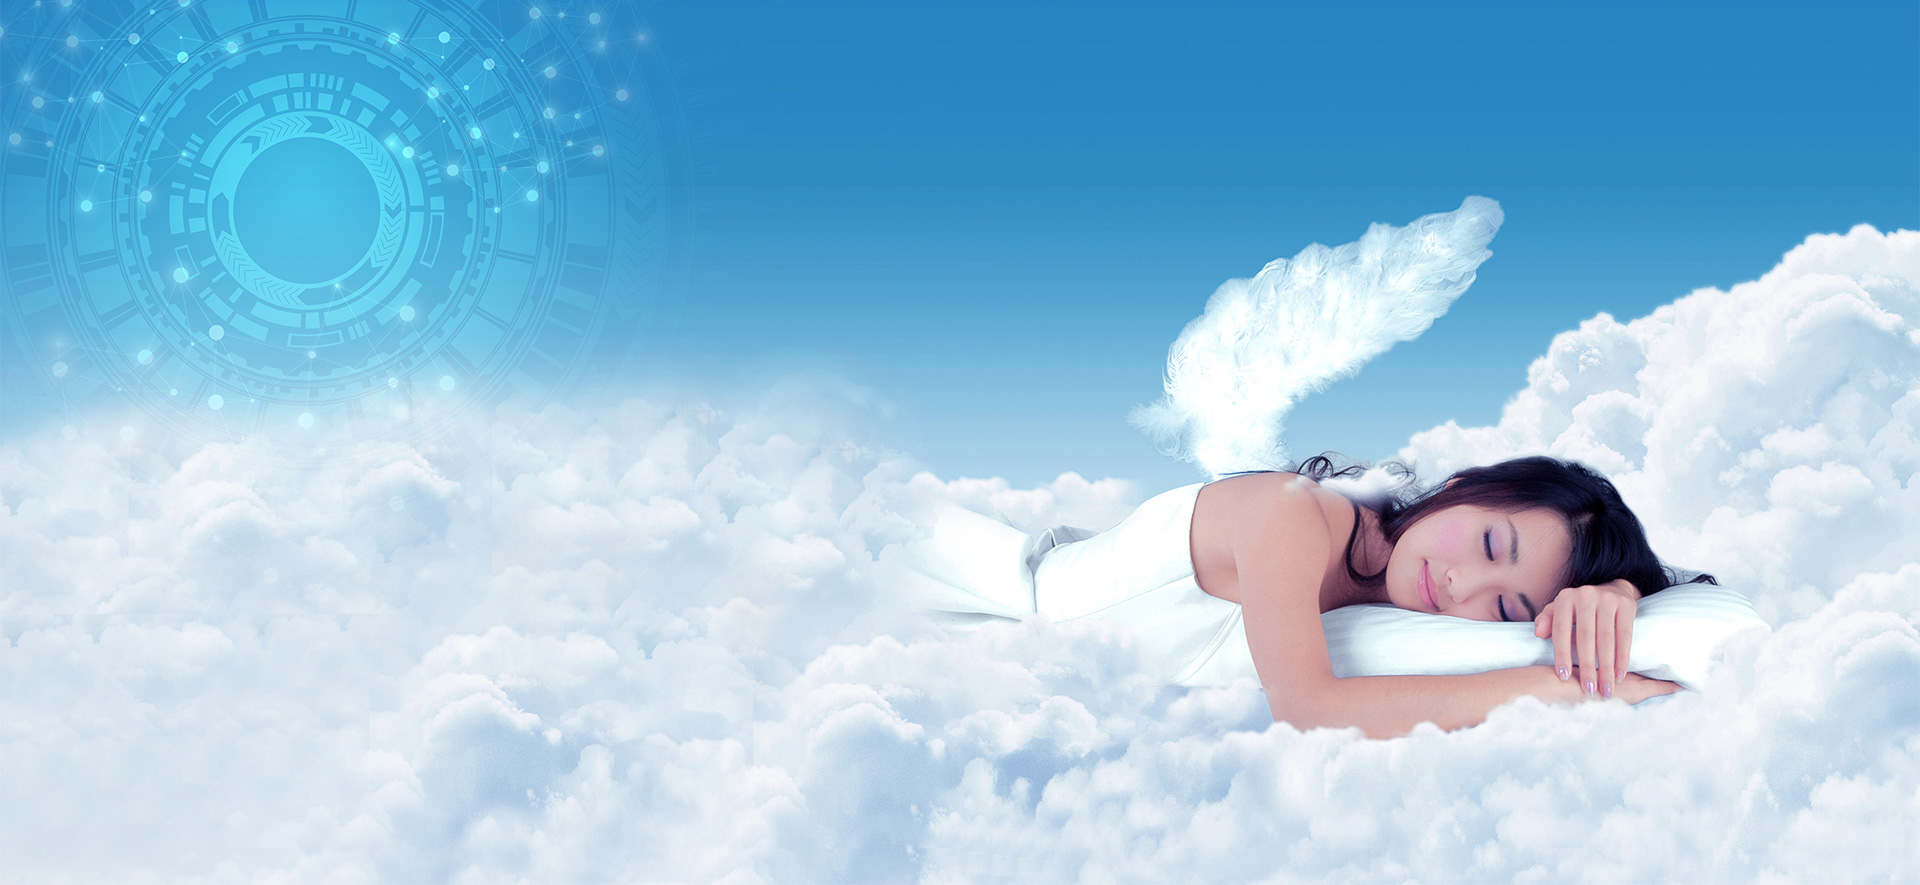 卧享云端 ● 天使般轻盈入眠